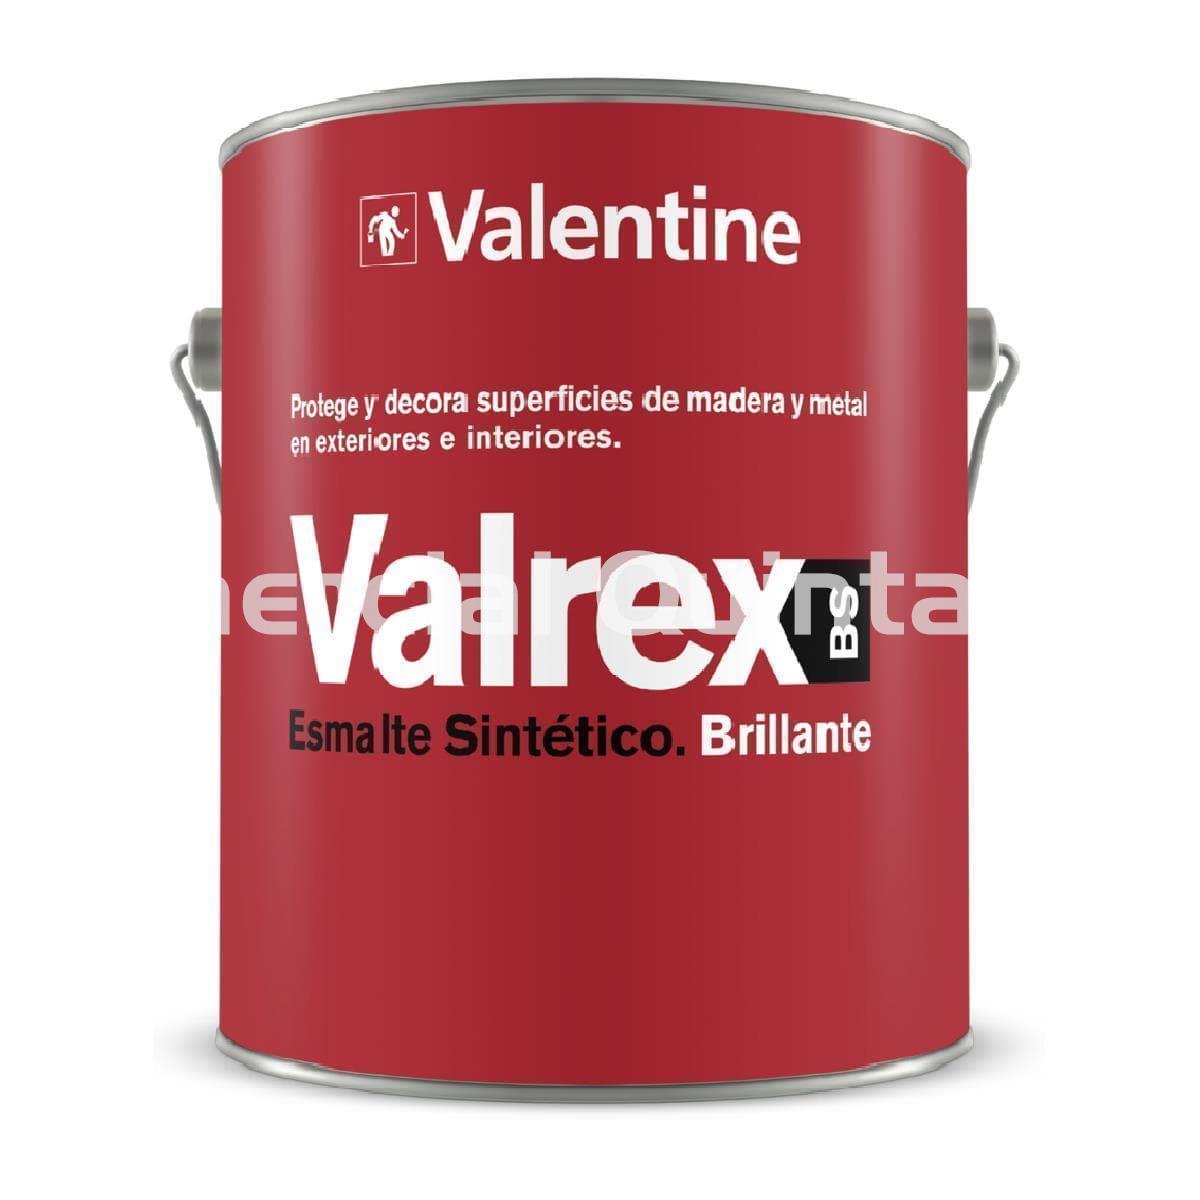 VALENTINE Valrex Brillante - Imagen 1